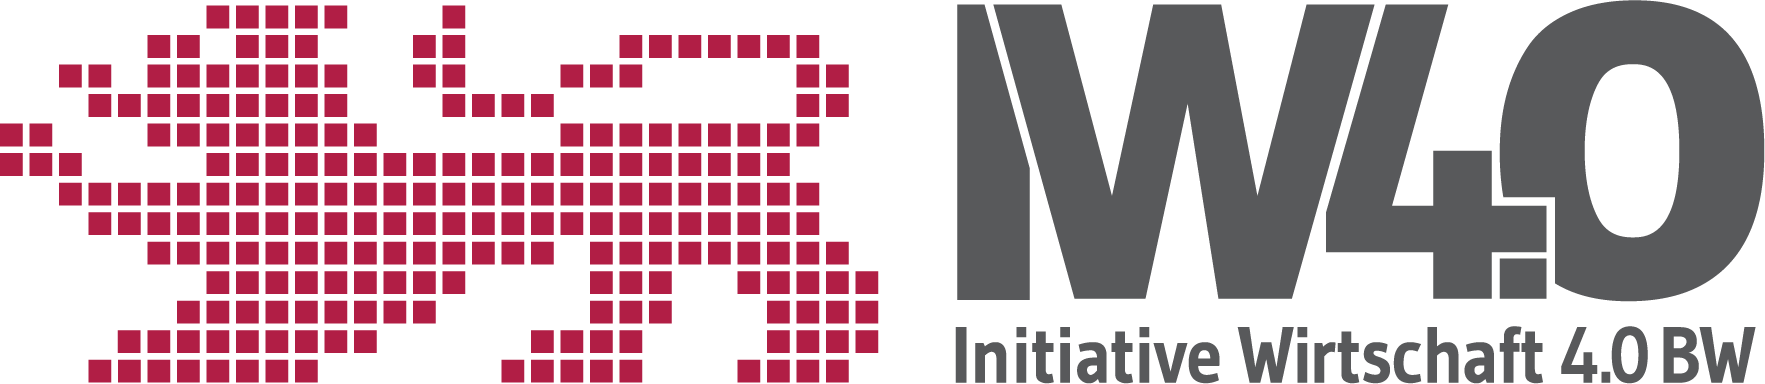 Das Logo der Initiative Wirtschaft 4.0